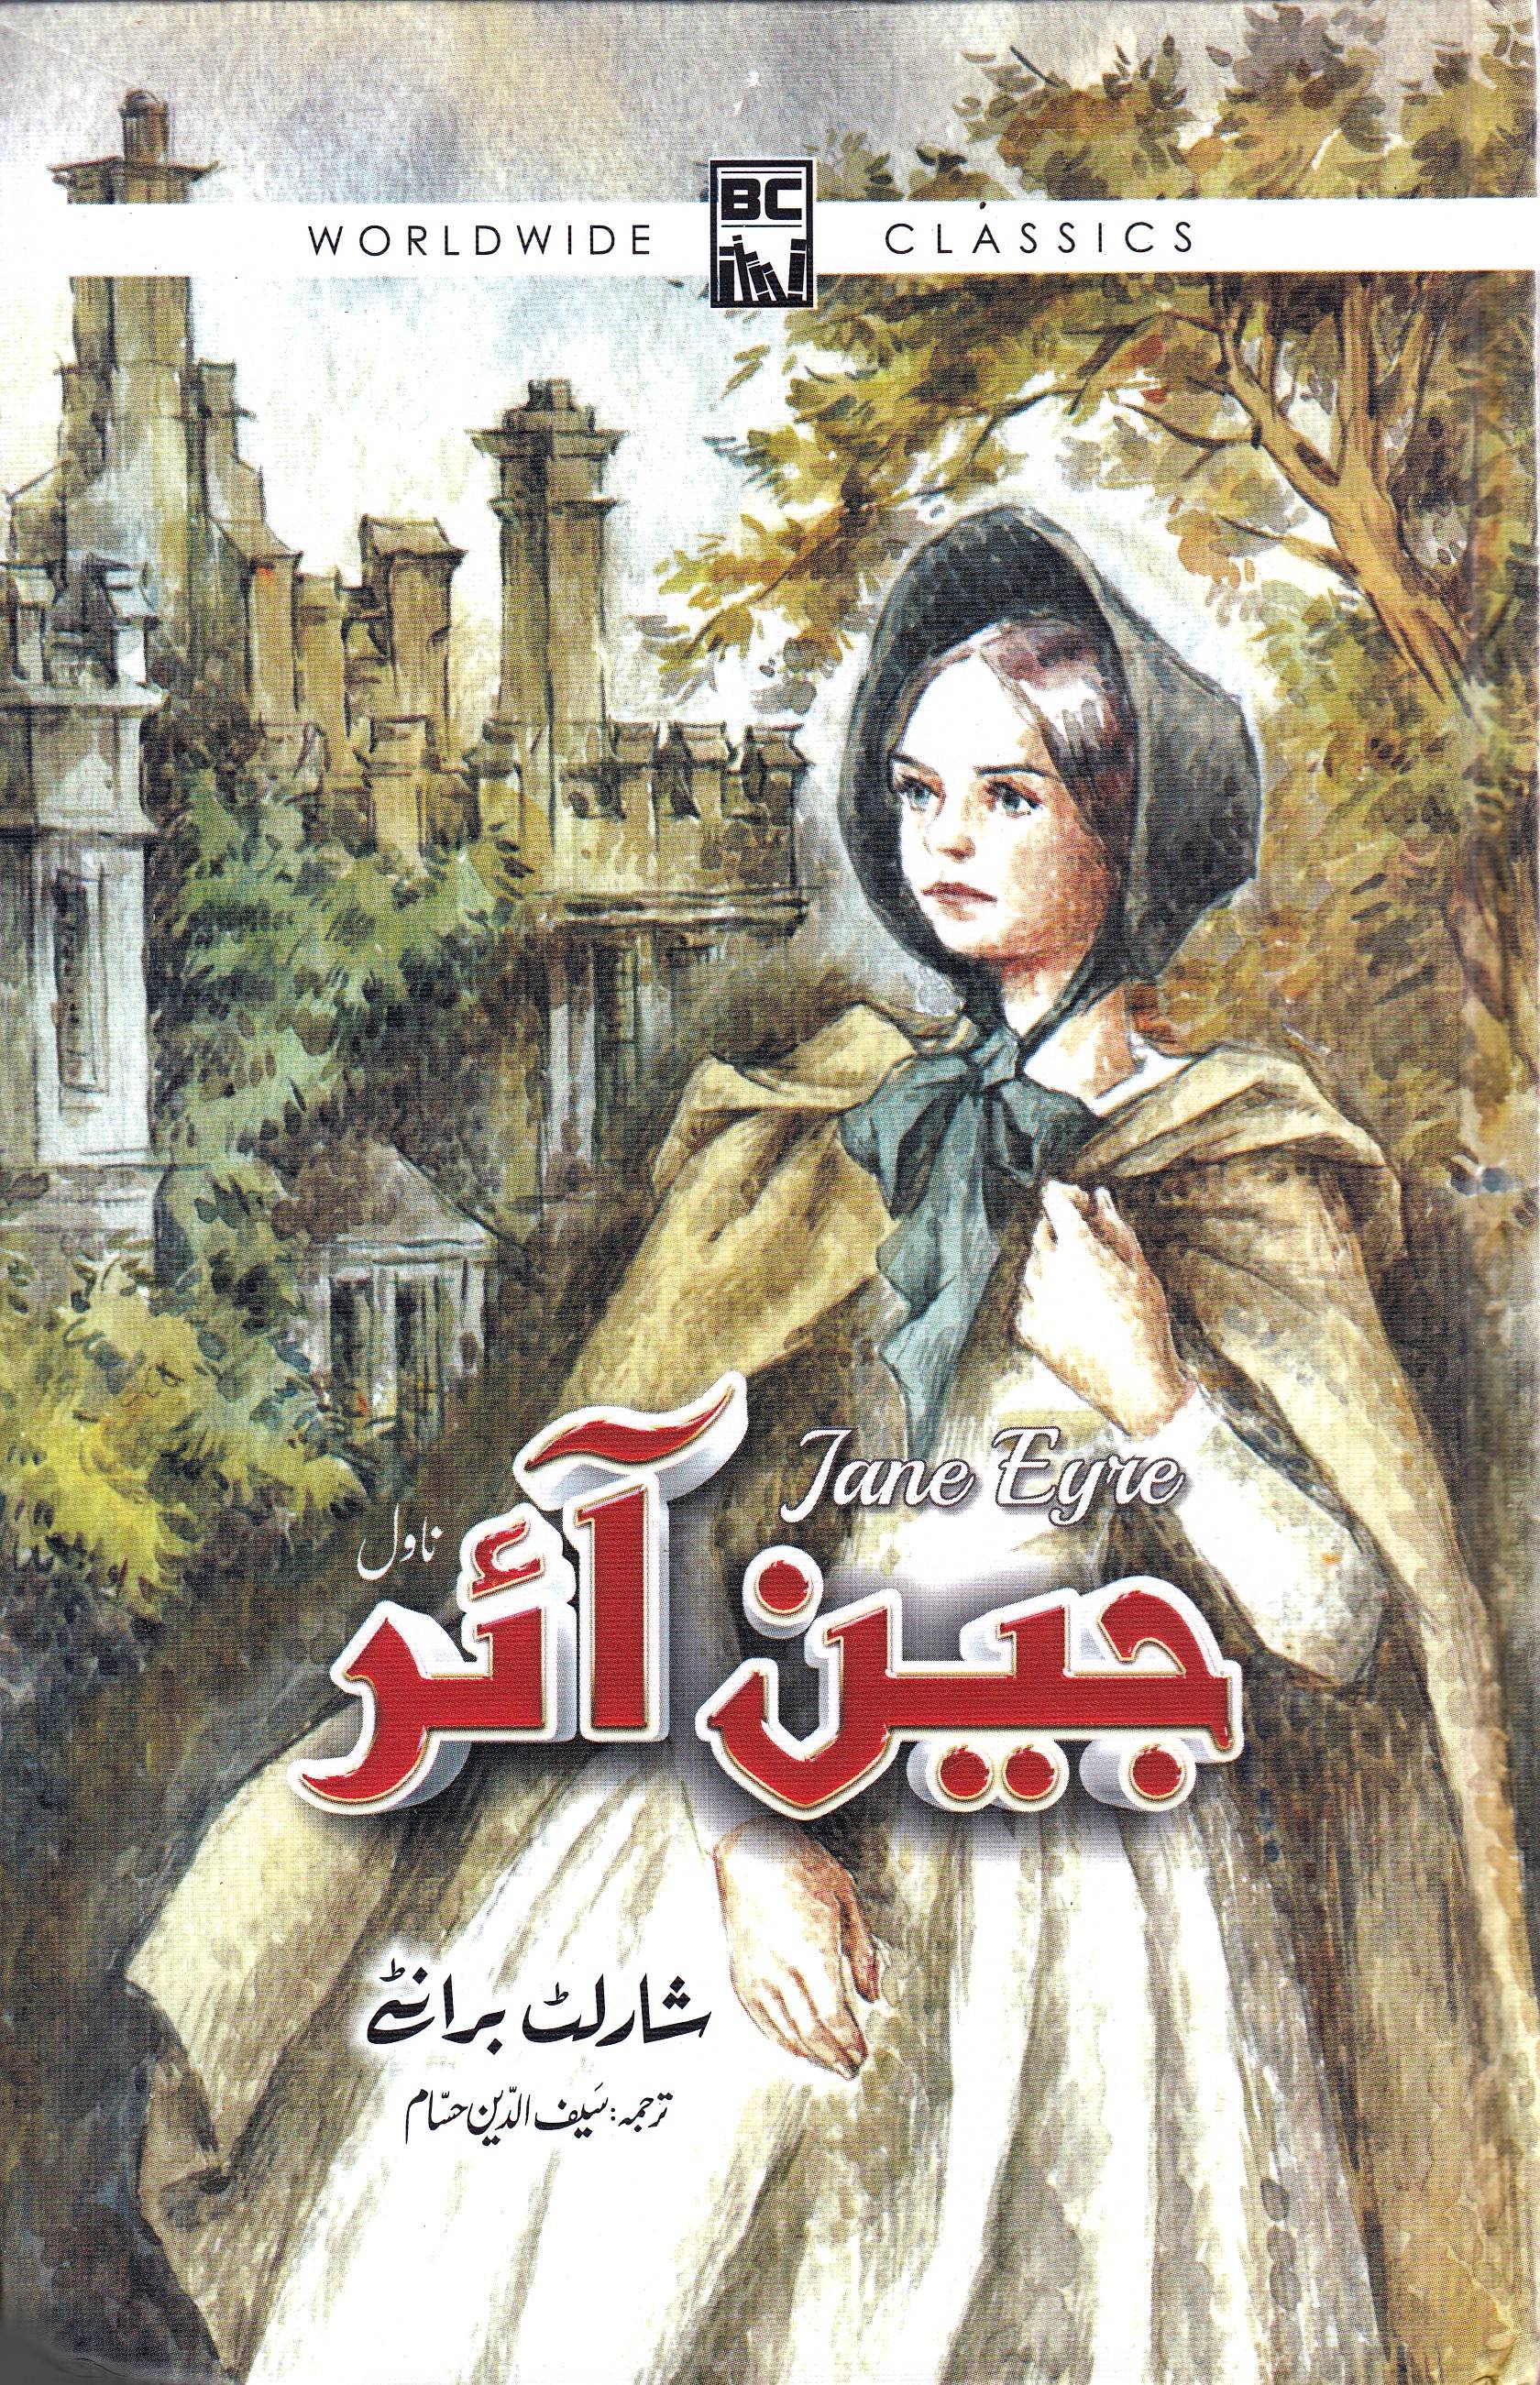 Jane Eyre (Urdu)